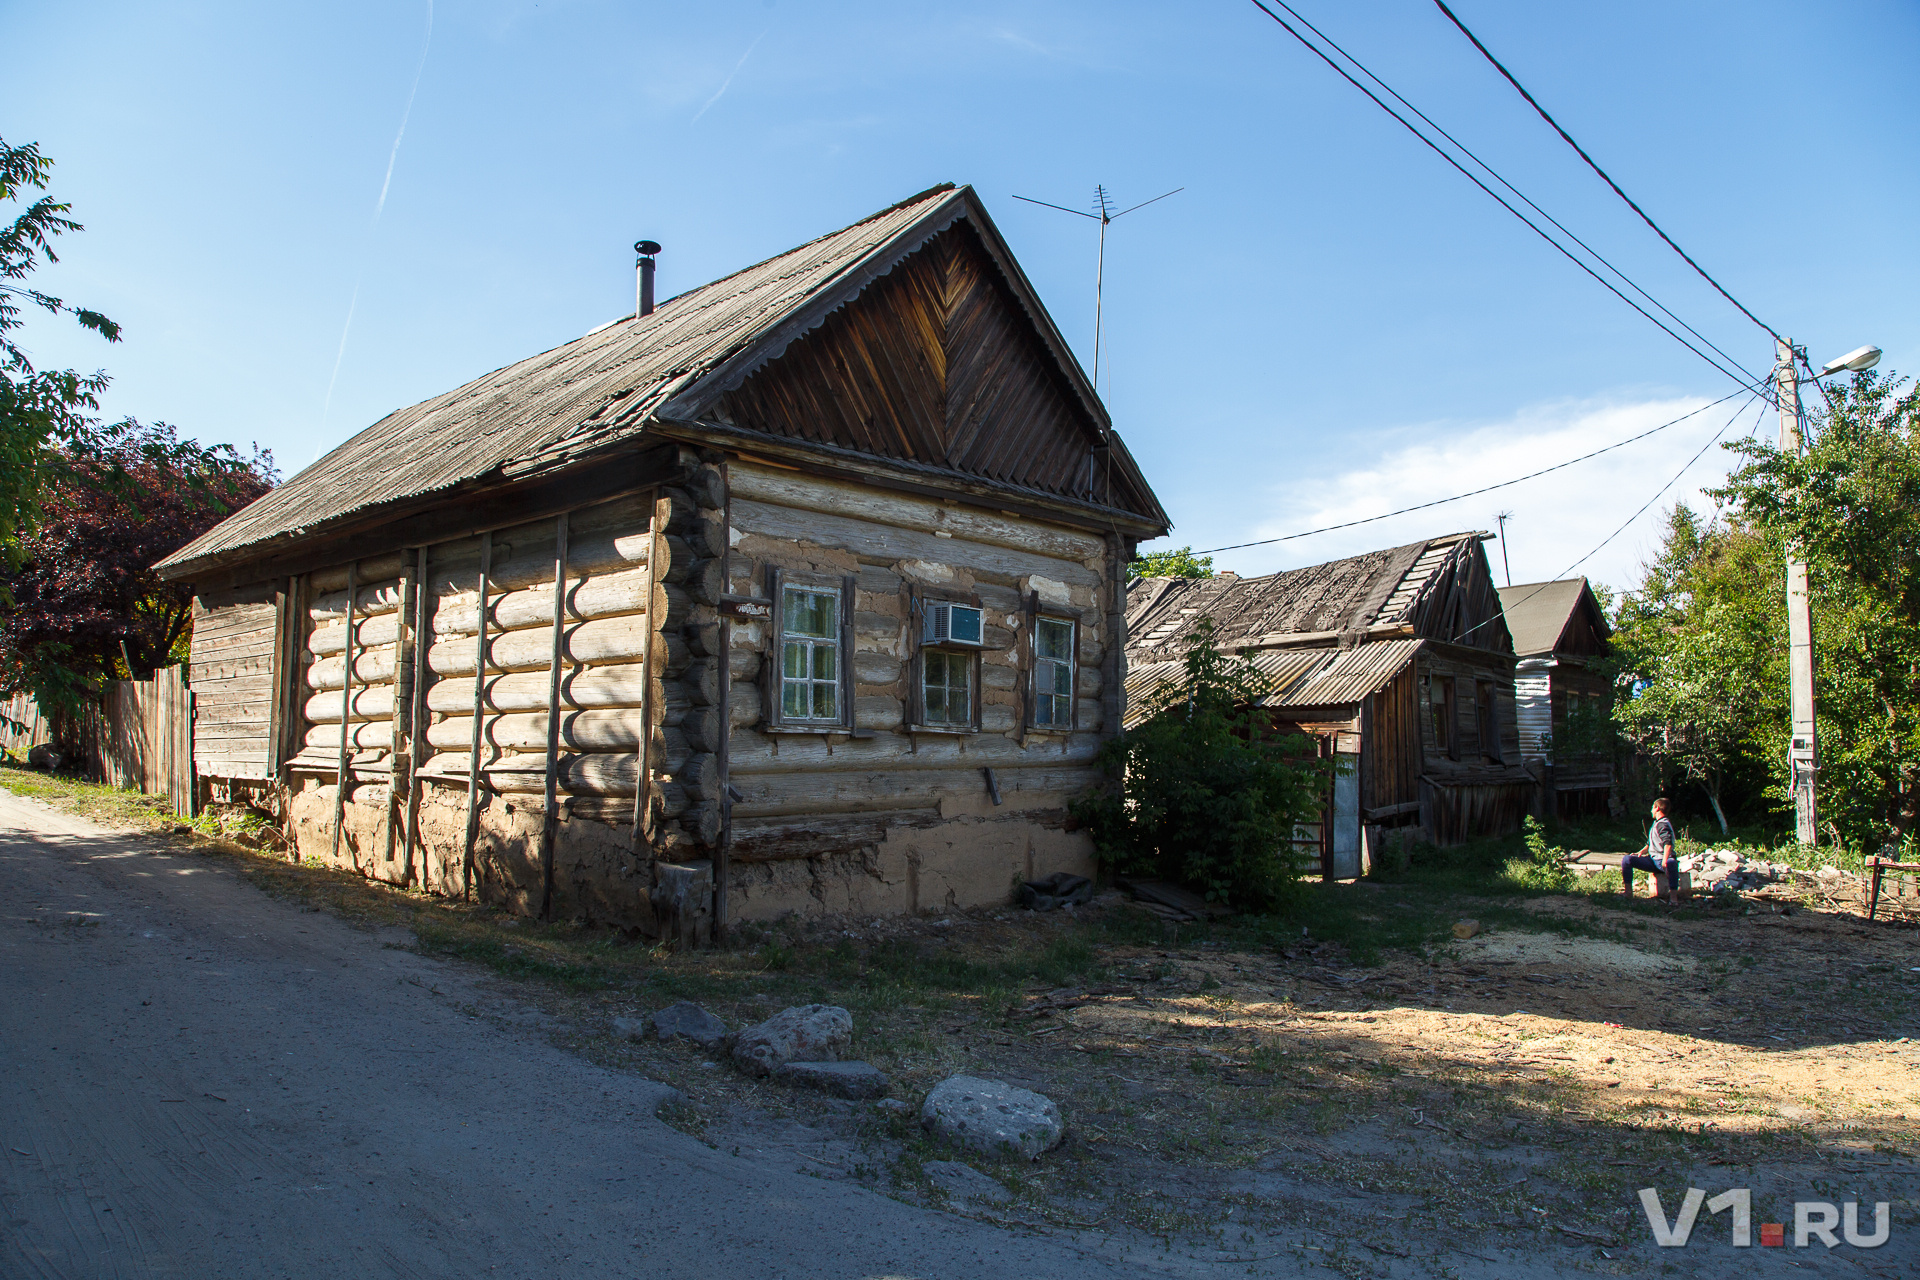 Один из немногих частных домов дореволюционной постройки, сохранившихся в Волгограде. По словам владельцев этого сруба, после войны на нем была заменена только крыша, другому ремонту дом не подвергался